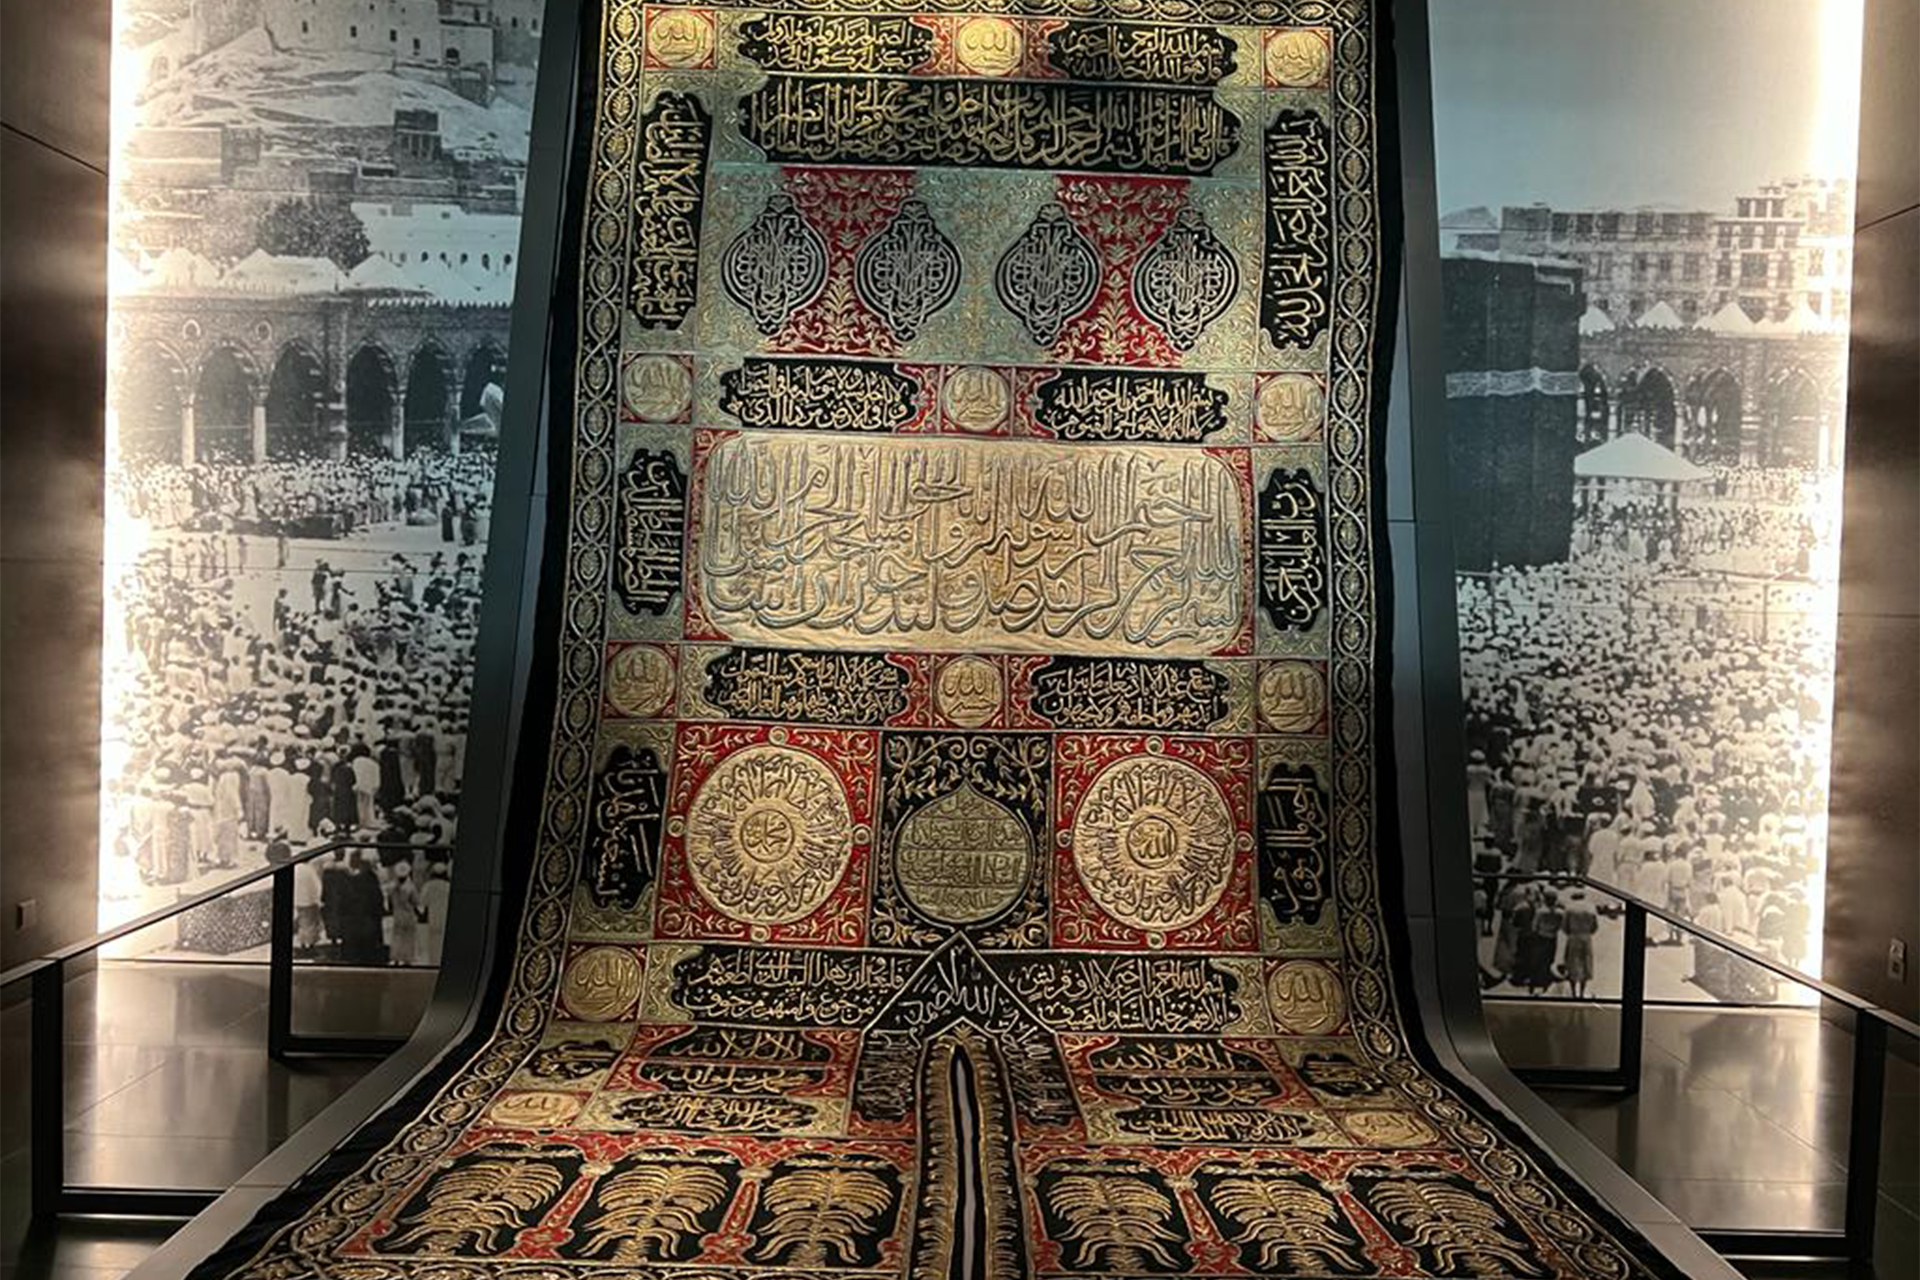 ستارة الكعبة المشرفة التي تعود إلى عصر السلطان العثماني عبدالمجيد الأول عام 1260 هجرية (الجزيرة )